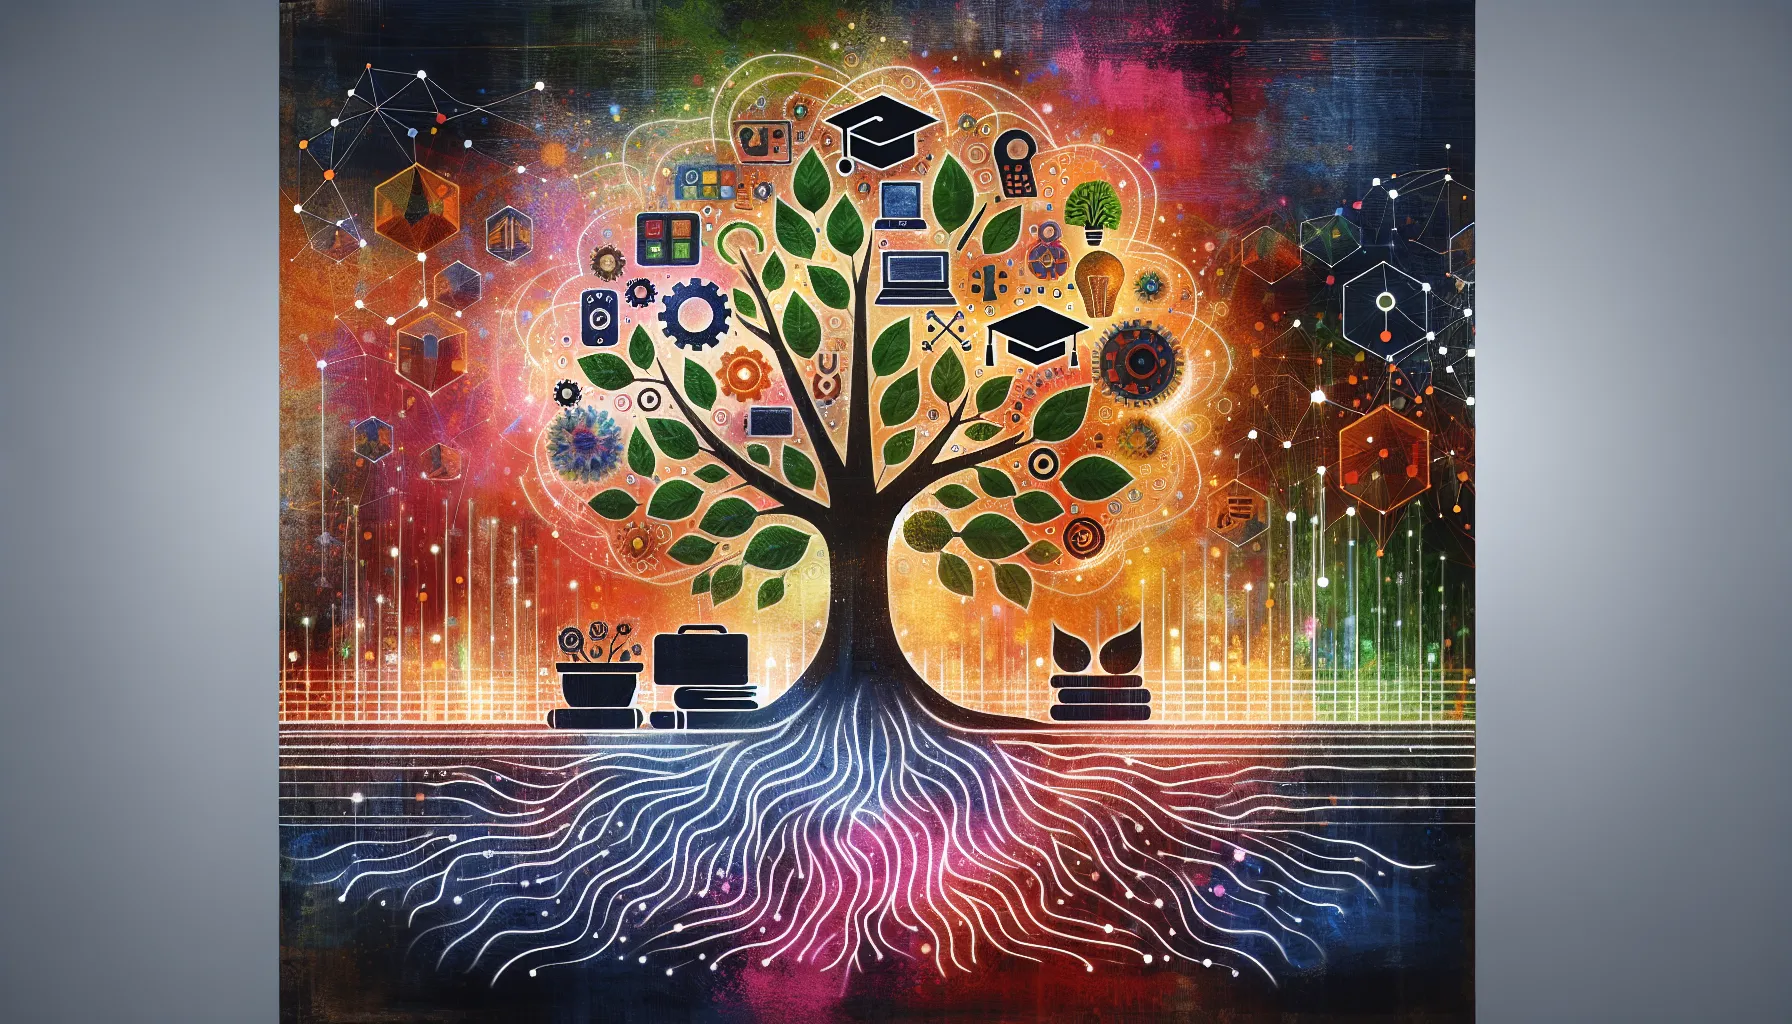 <strong>Drzewo wiedzy</strong>: Korzenie i gałęzie symbolizujące edukacyjne fundamenty i rozgałęzione ścieżki rozwoju, które inspirują do przekraczania granic i odkrywania nowych możliwości.